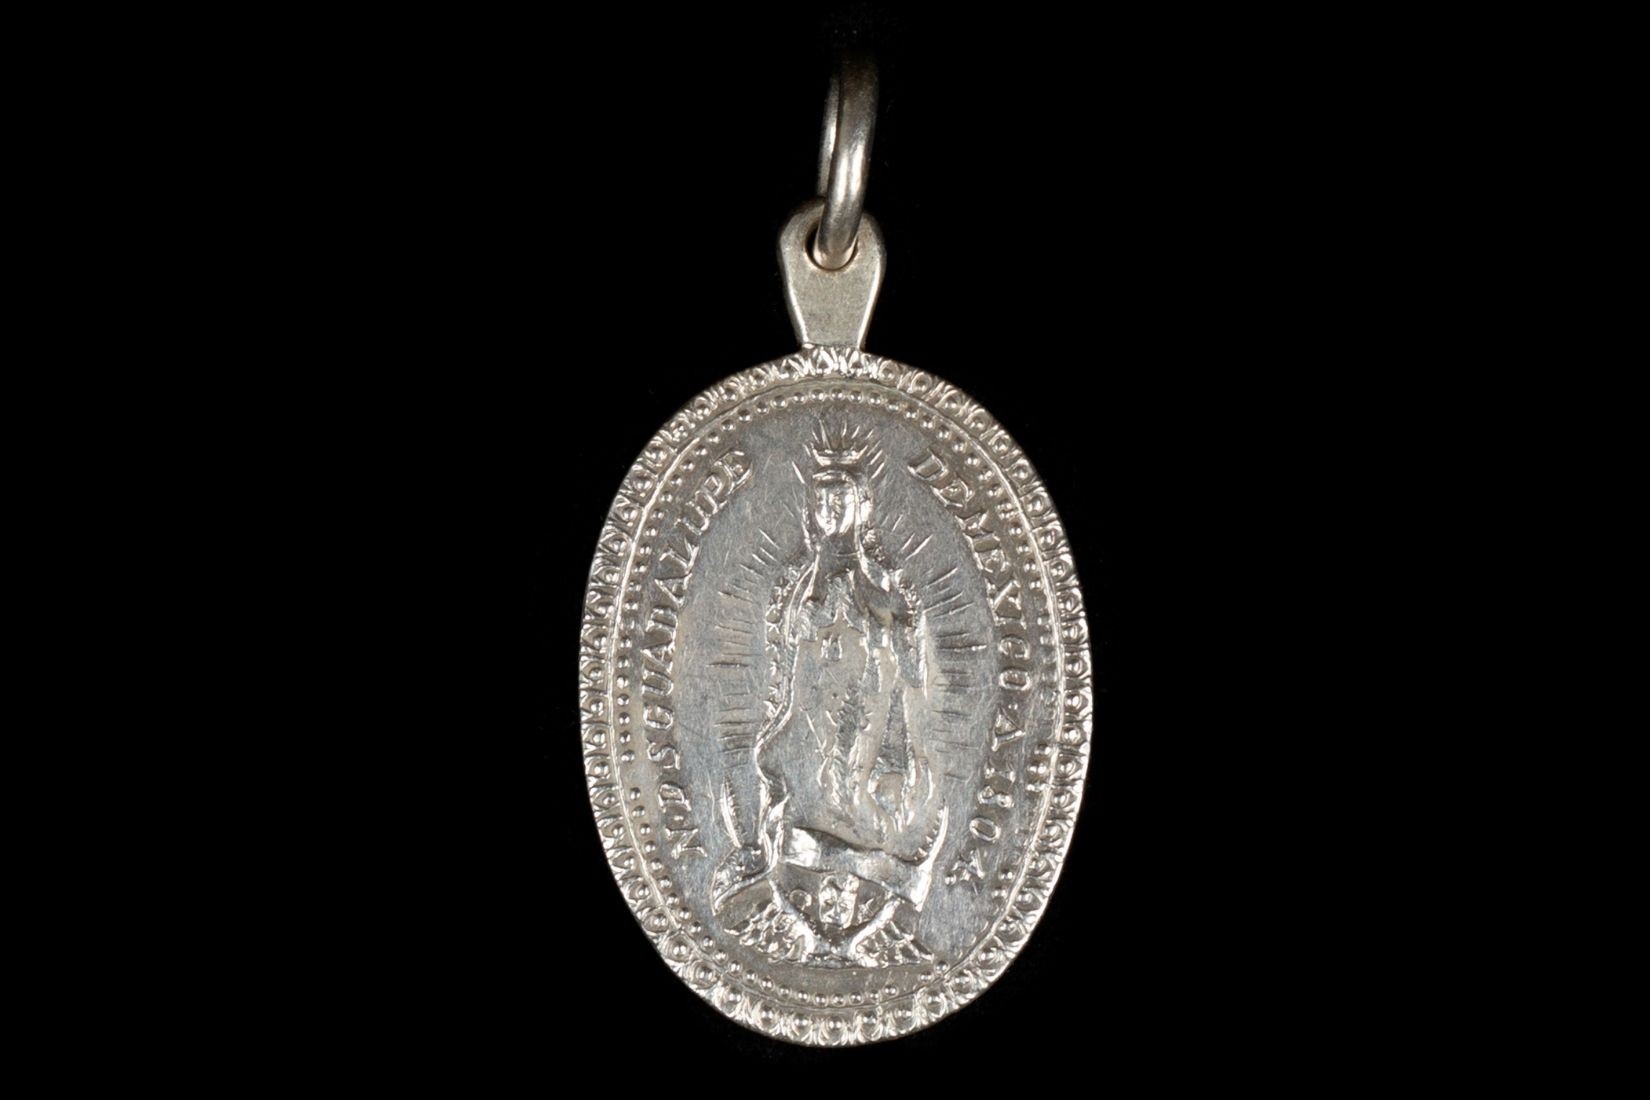 Medalla de plata. Virgen de Guadalupe. Artesano y procedencia desconocidos. 1804. Col.Marie Thérèse Hermand de Arango. (Foto: Estudio Kristina Velfu, EKV).